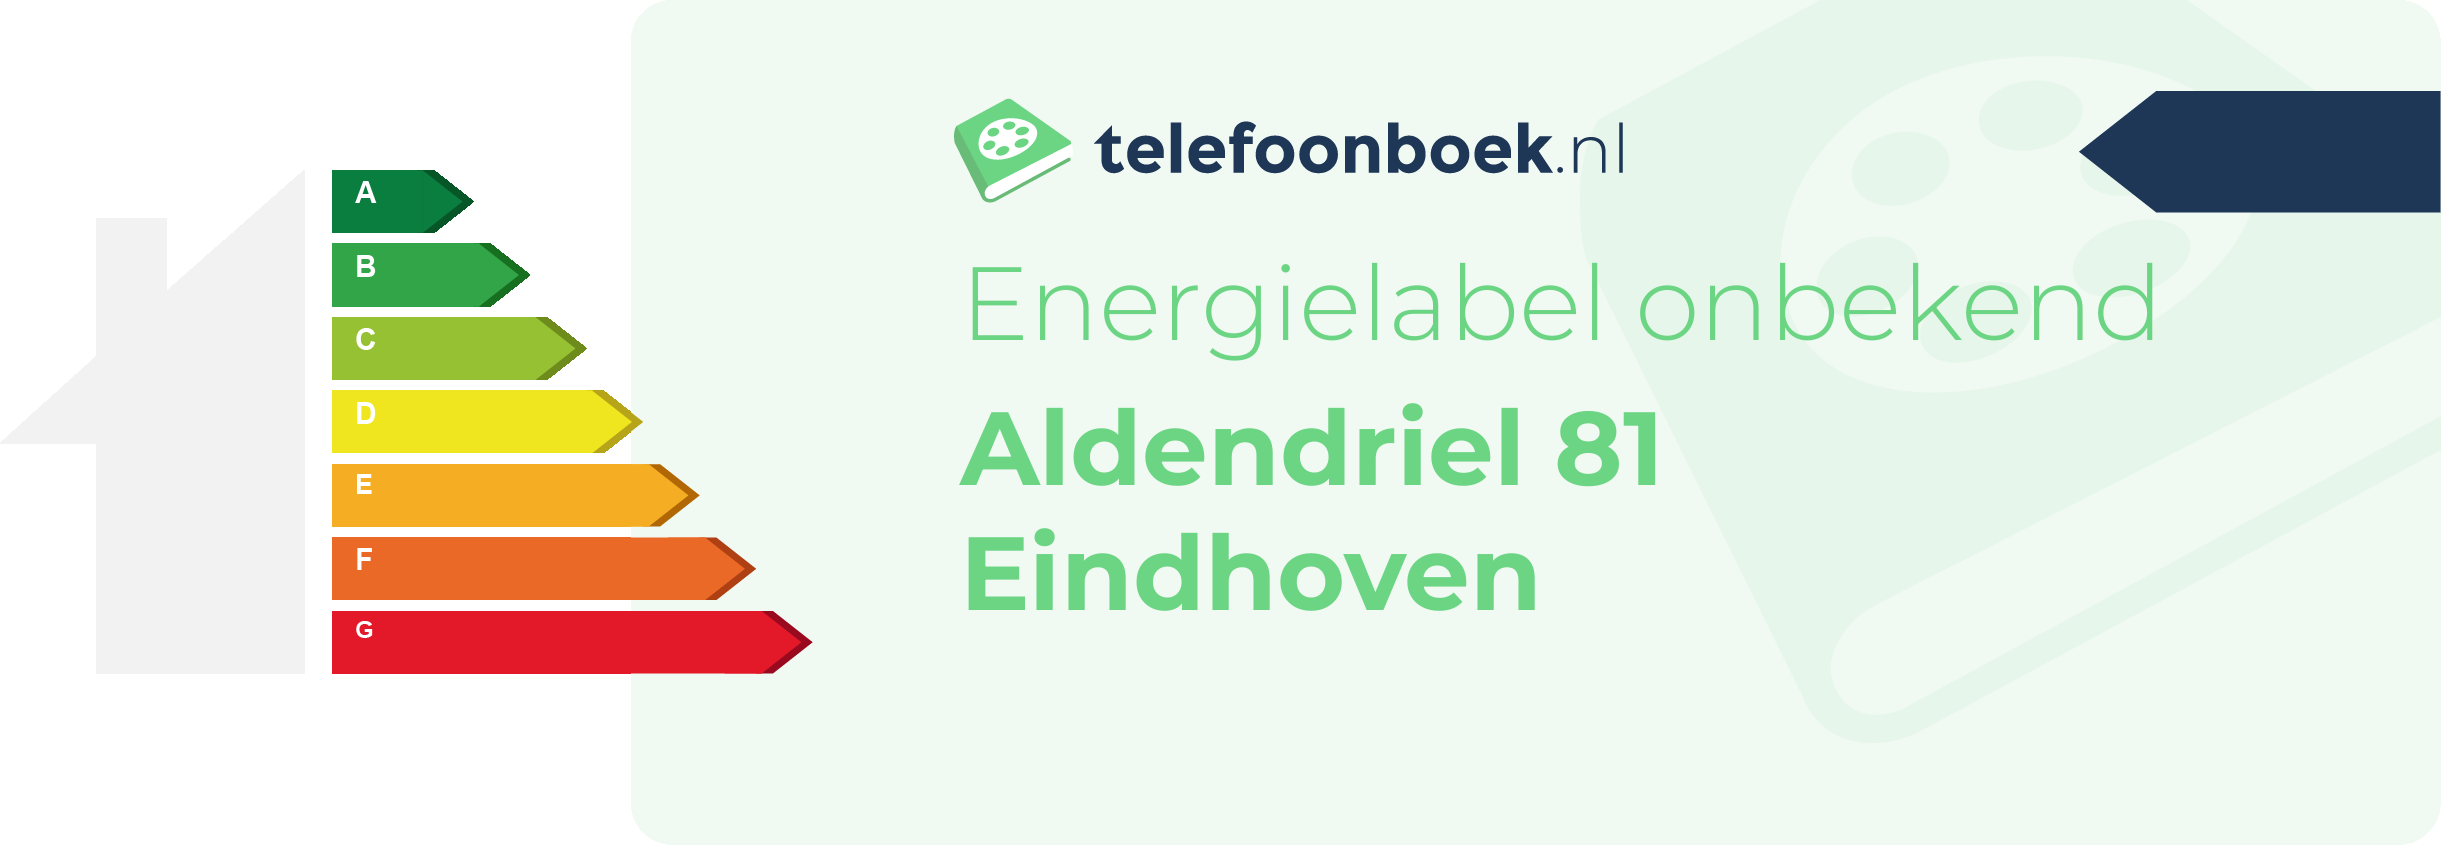 Energielabel Aldendriel 81 Eindhoven